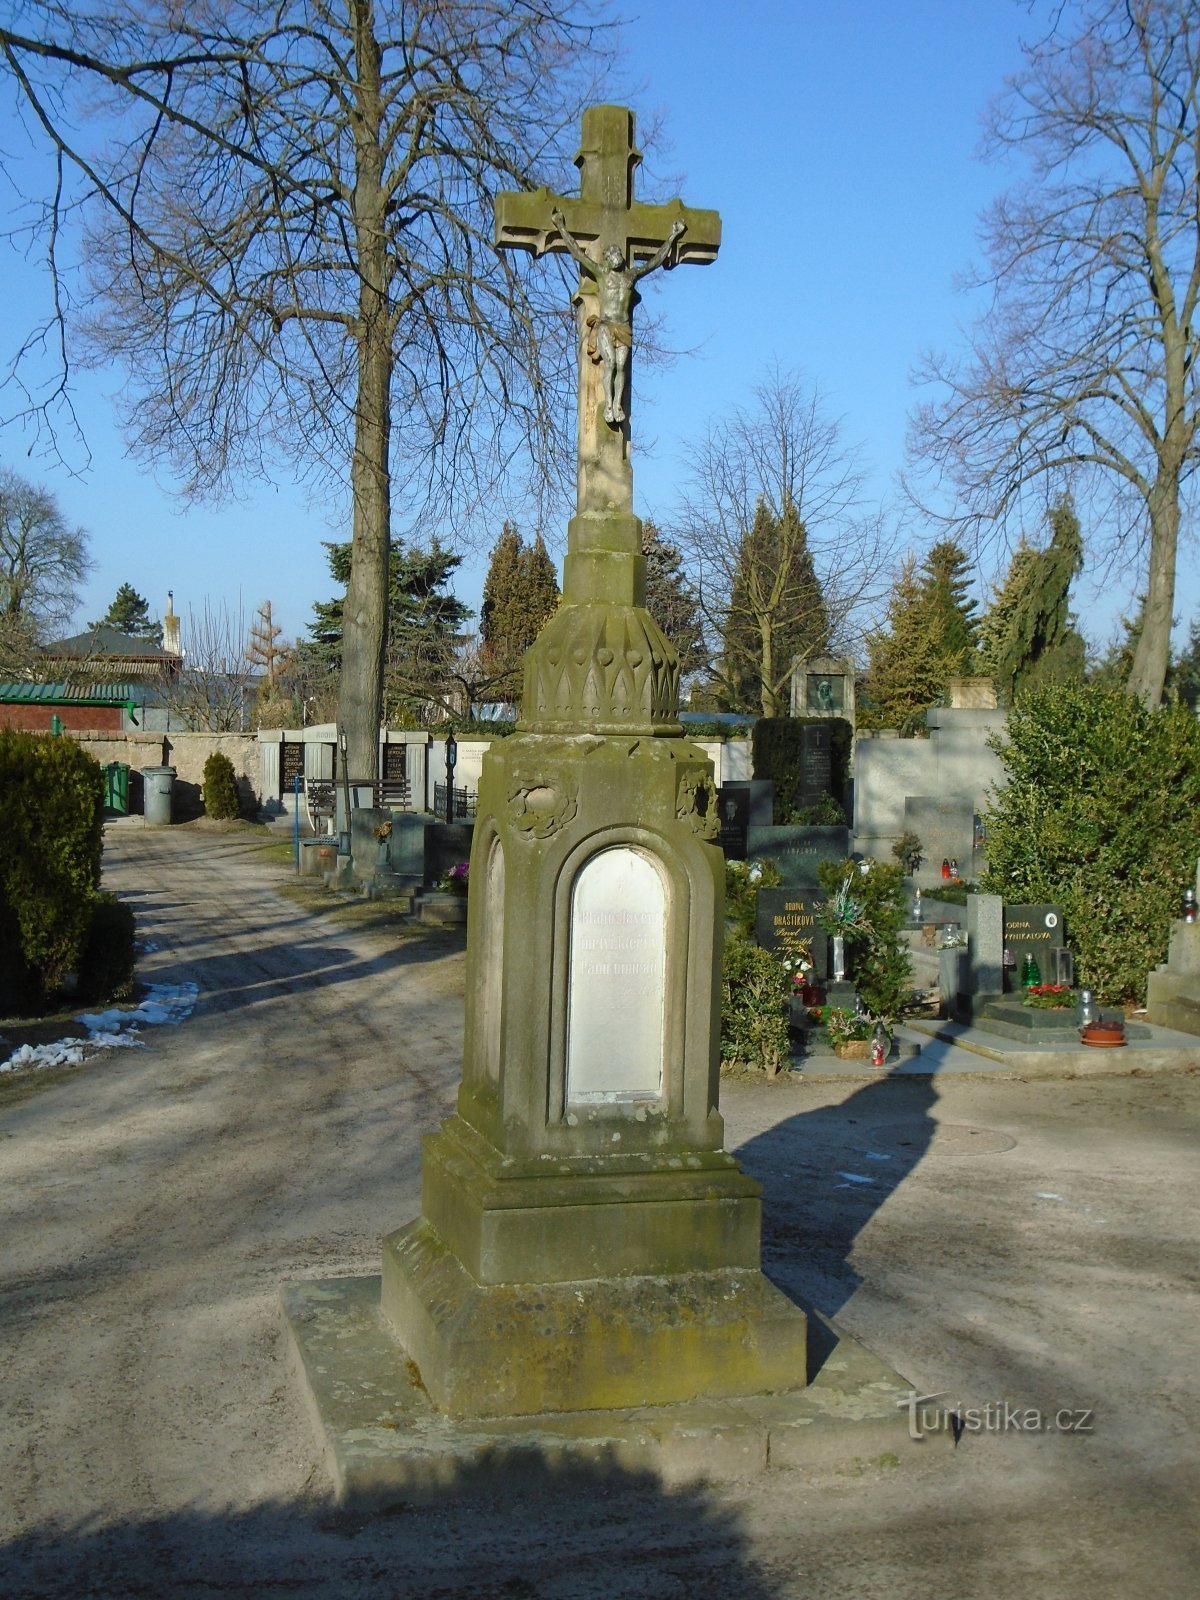 Croix de cimetière à Pouchov (Hradec Králové, 22.2.2018/XNUMX/XNUMX)